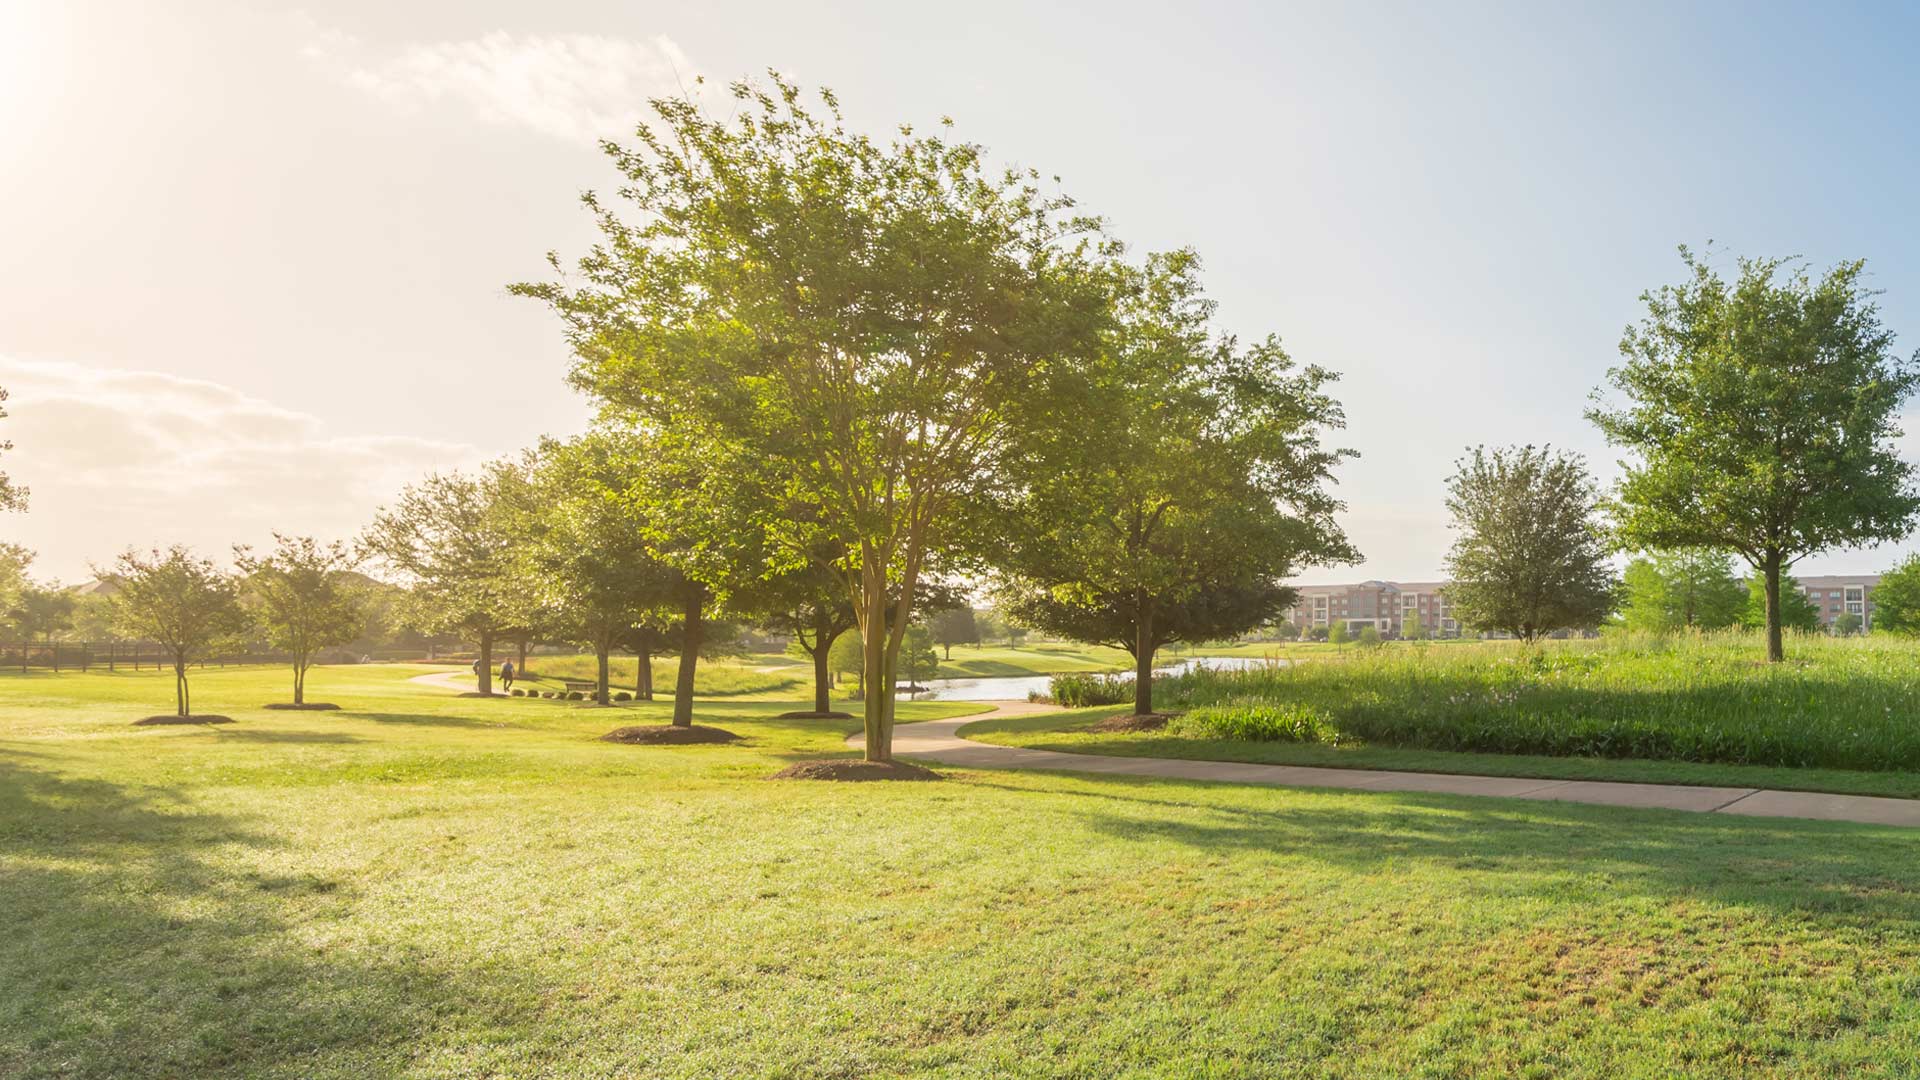 Greenery landscape shown in a neighborhood in Mint Hill, NC.